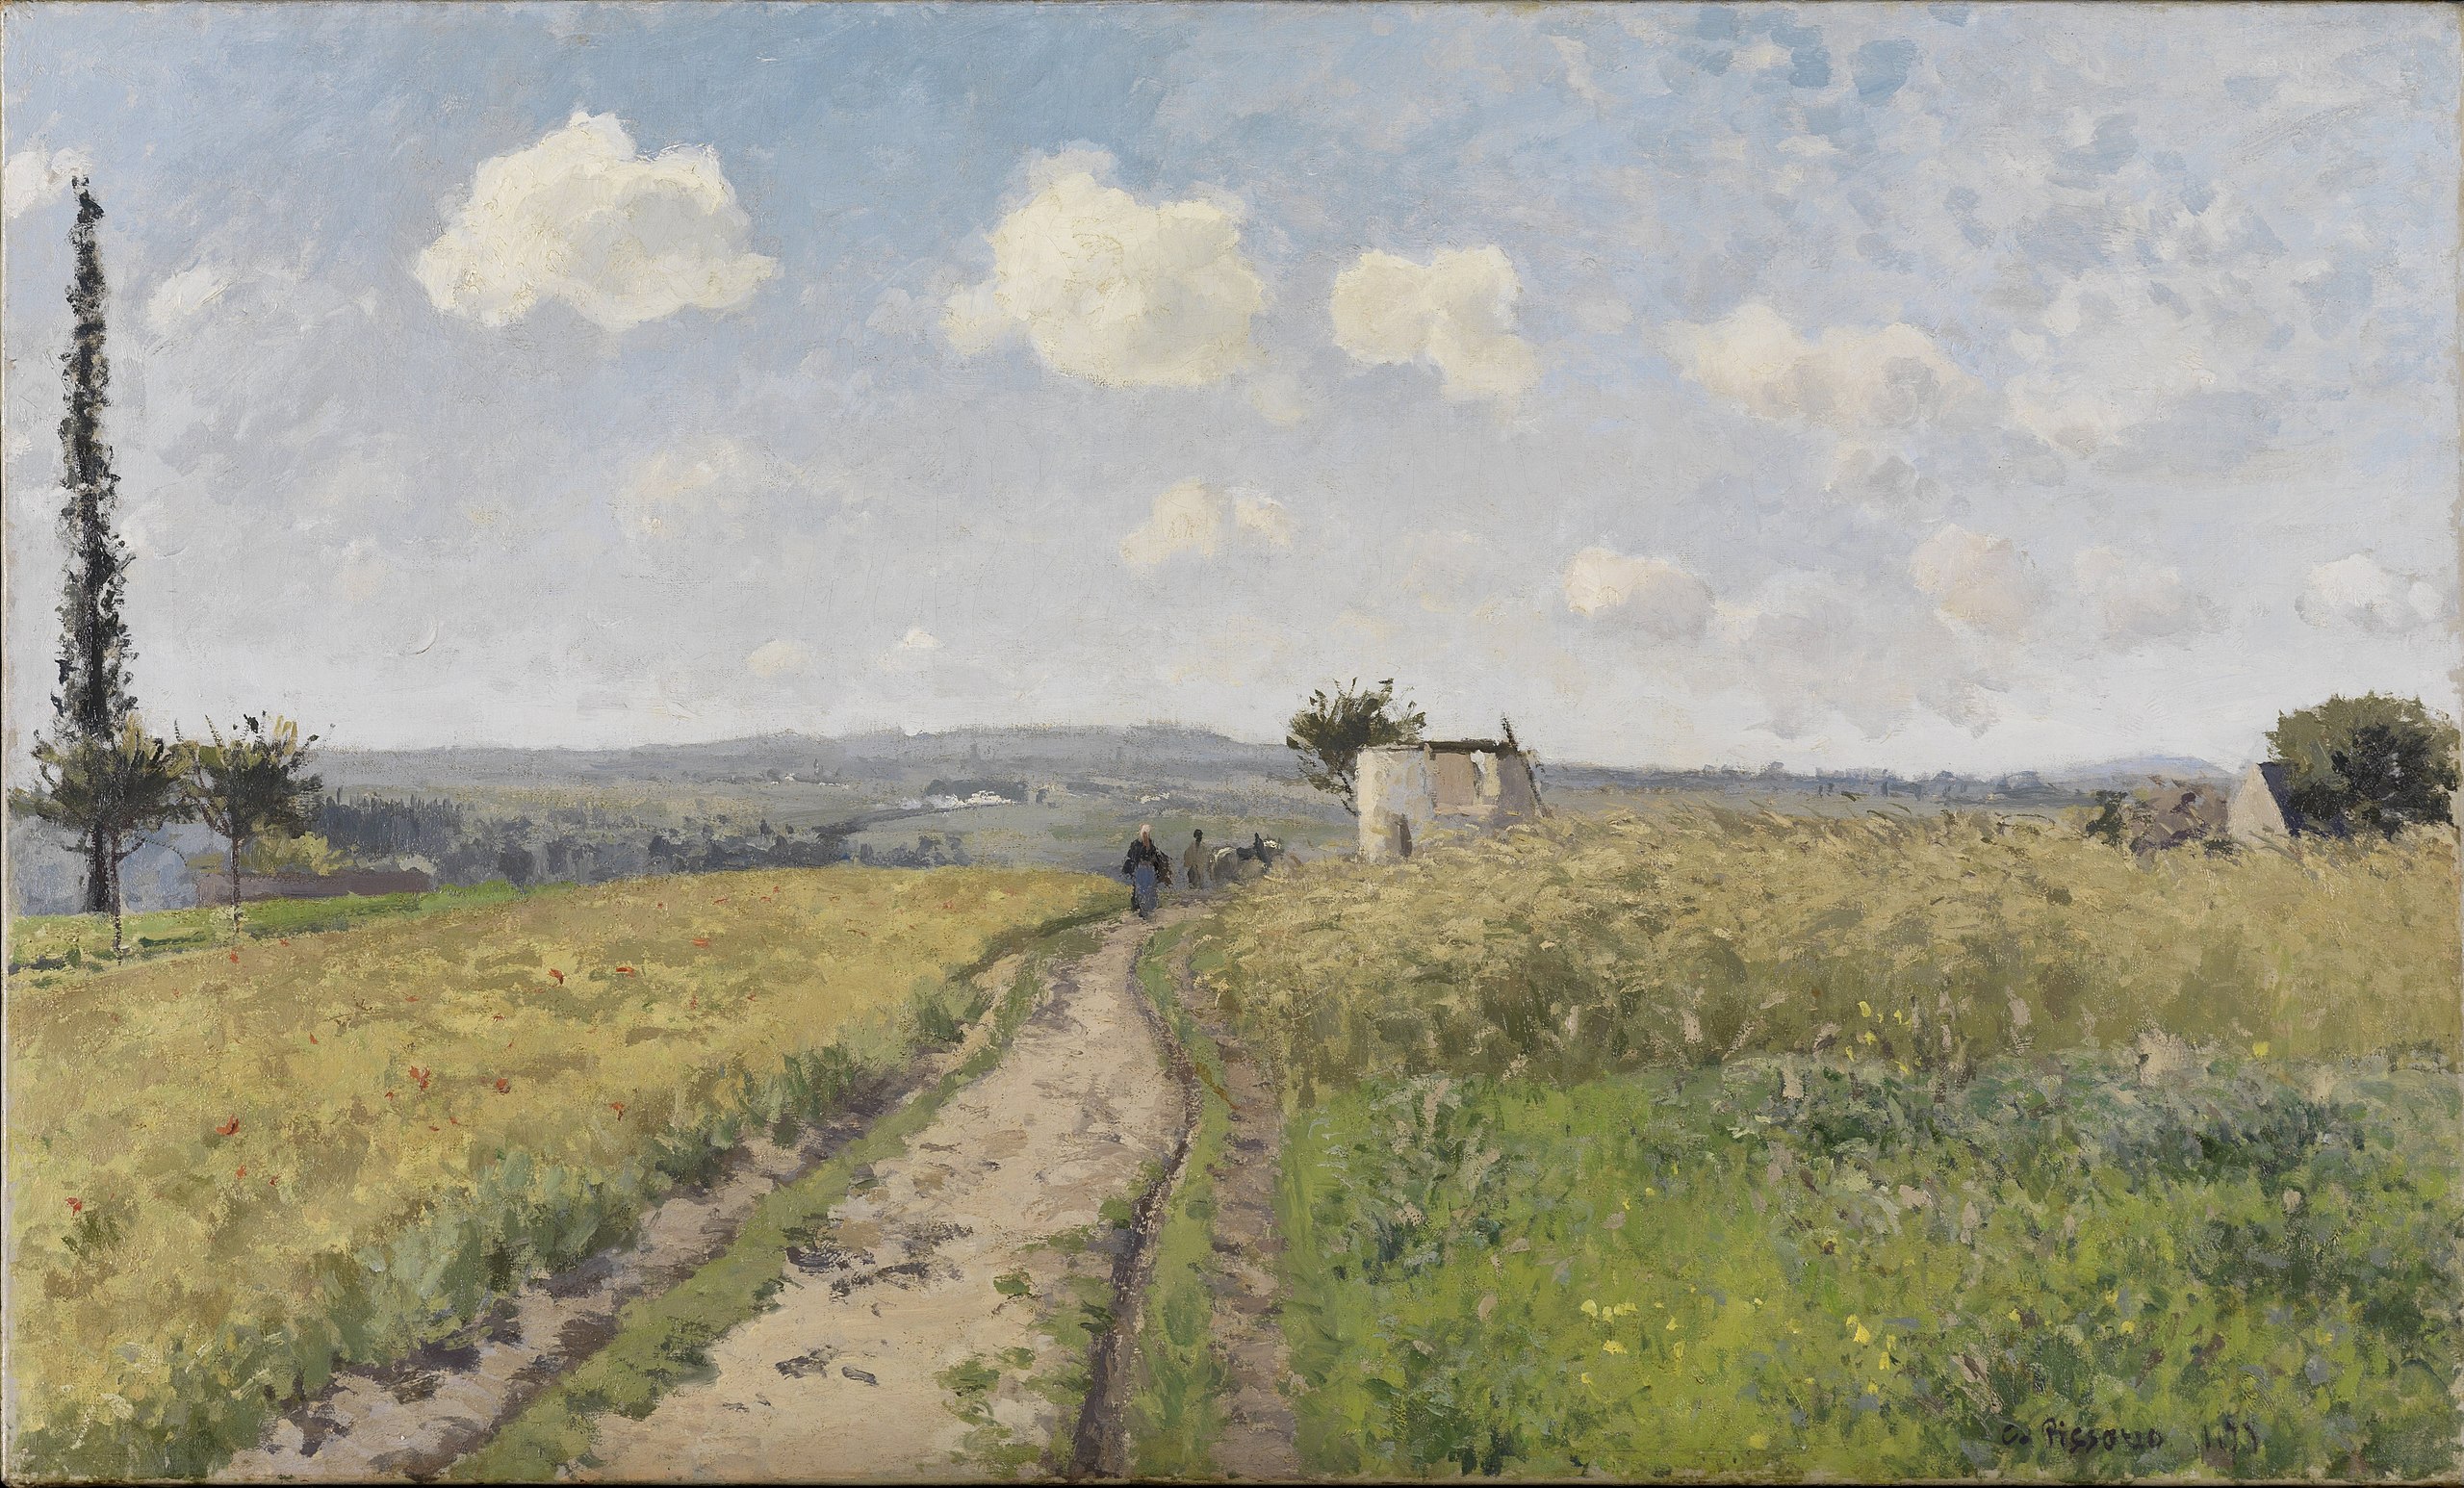 Mañana de junio cerca de Pontoise by Camille Pissarro - 1873 - 78 x 115 cm Galería Nacional de Arte de Karlsruhe